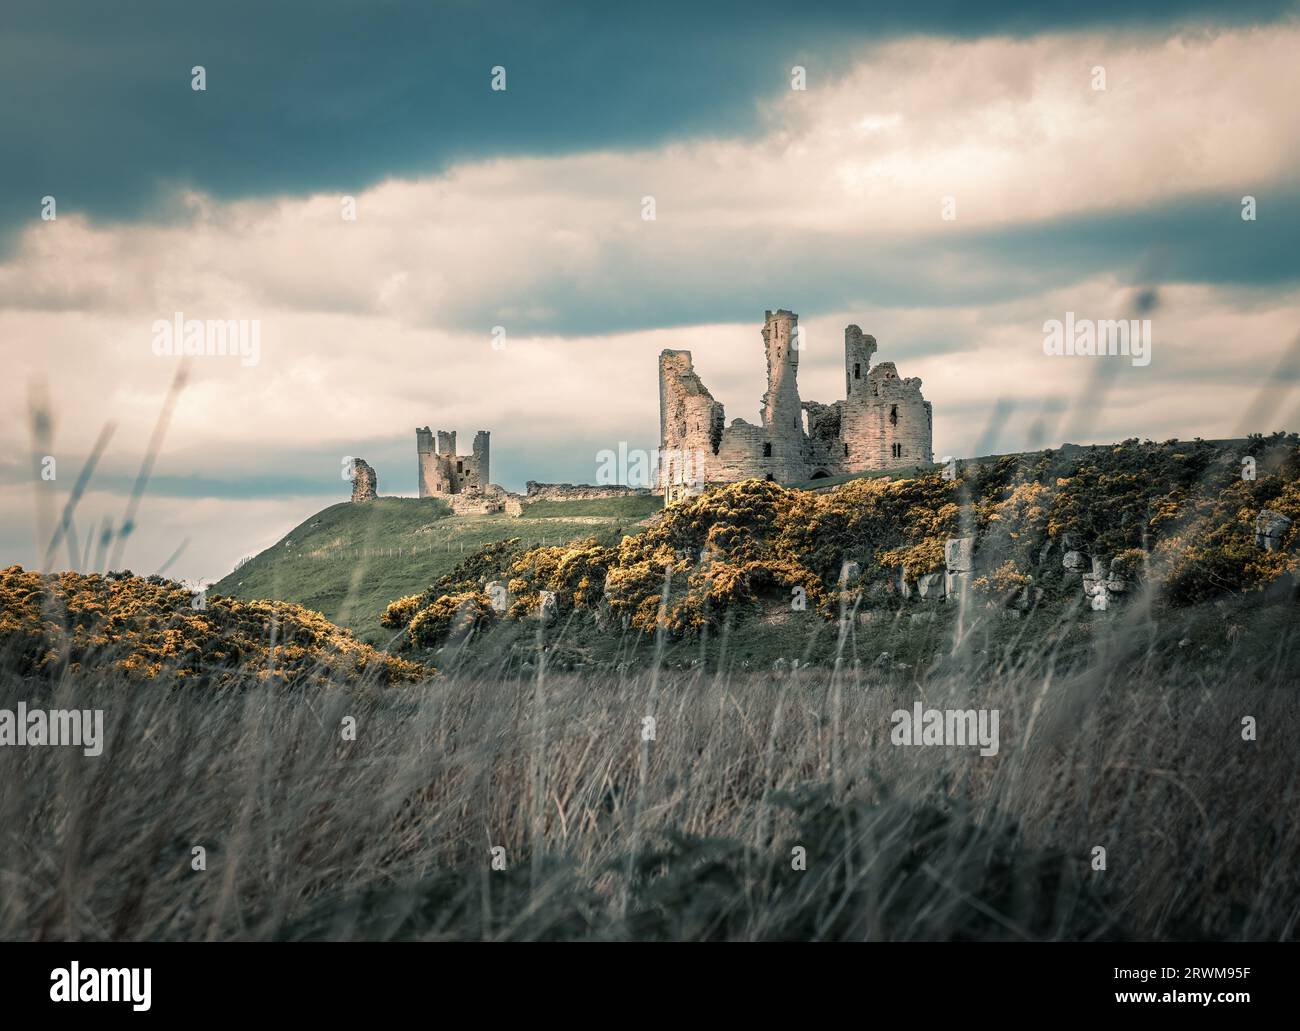 Ruines du château de Dunstanburgh au sommet d'une colline rocheuse avec un ciel nuageux spectaculaire Banque D'Images